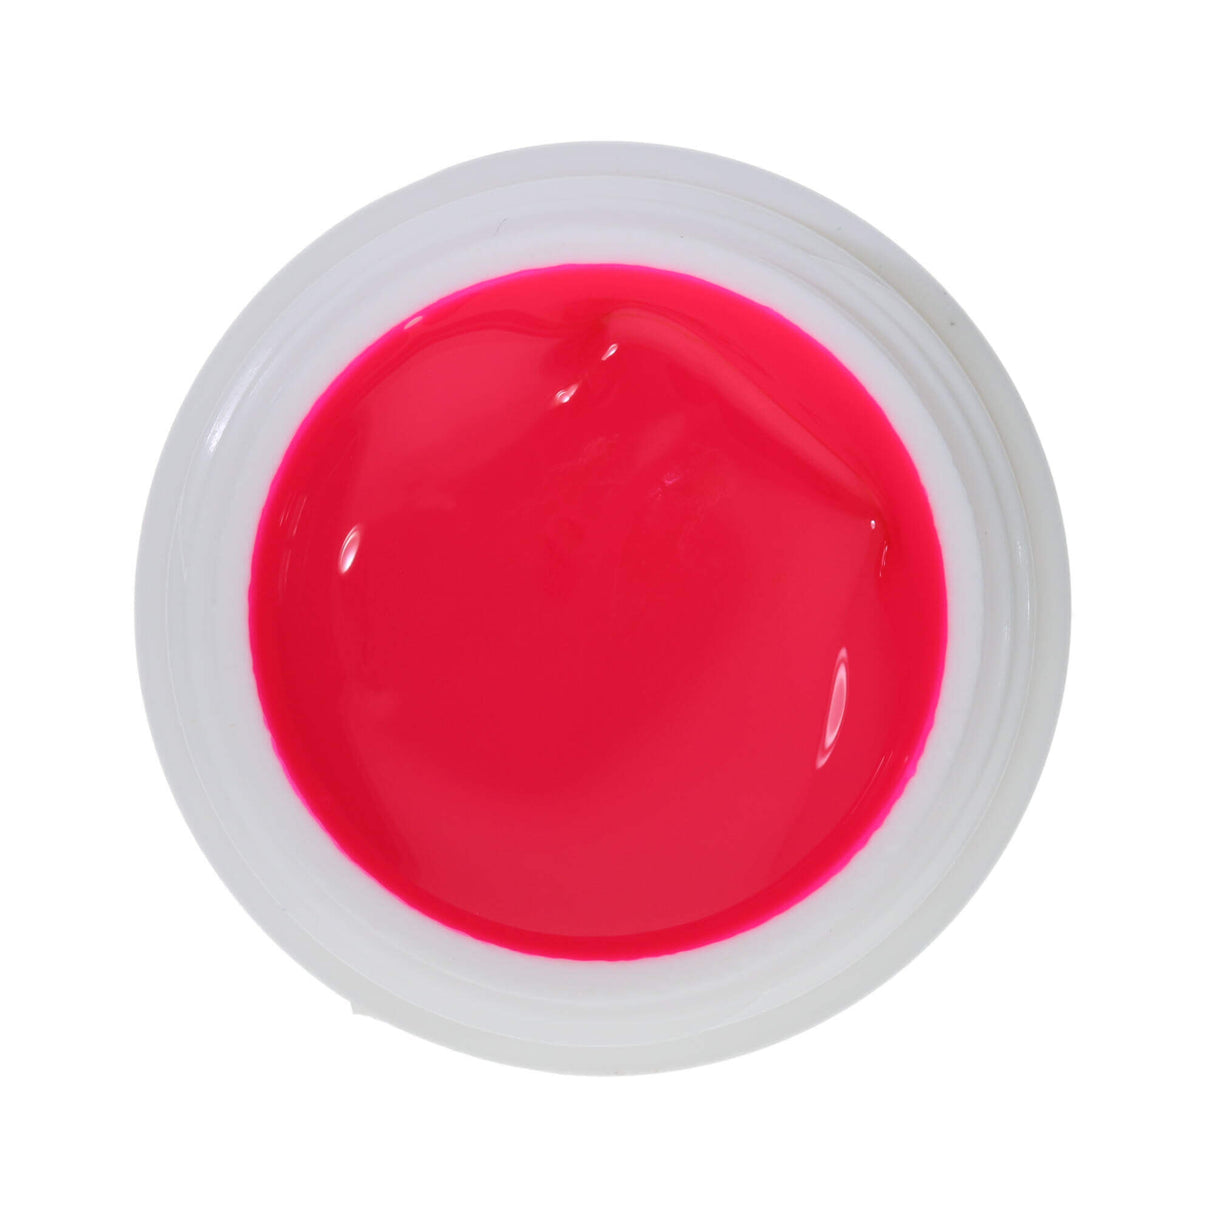 #1066 Premium-DEKO Color Gel 5ml Neon Pink NOT FOR COSMETIC USE (#500 Ersatz)